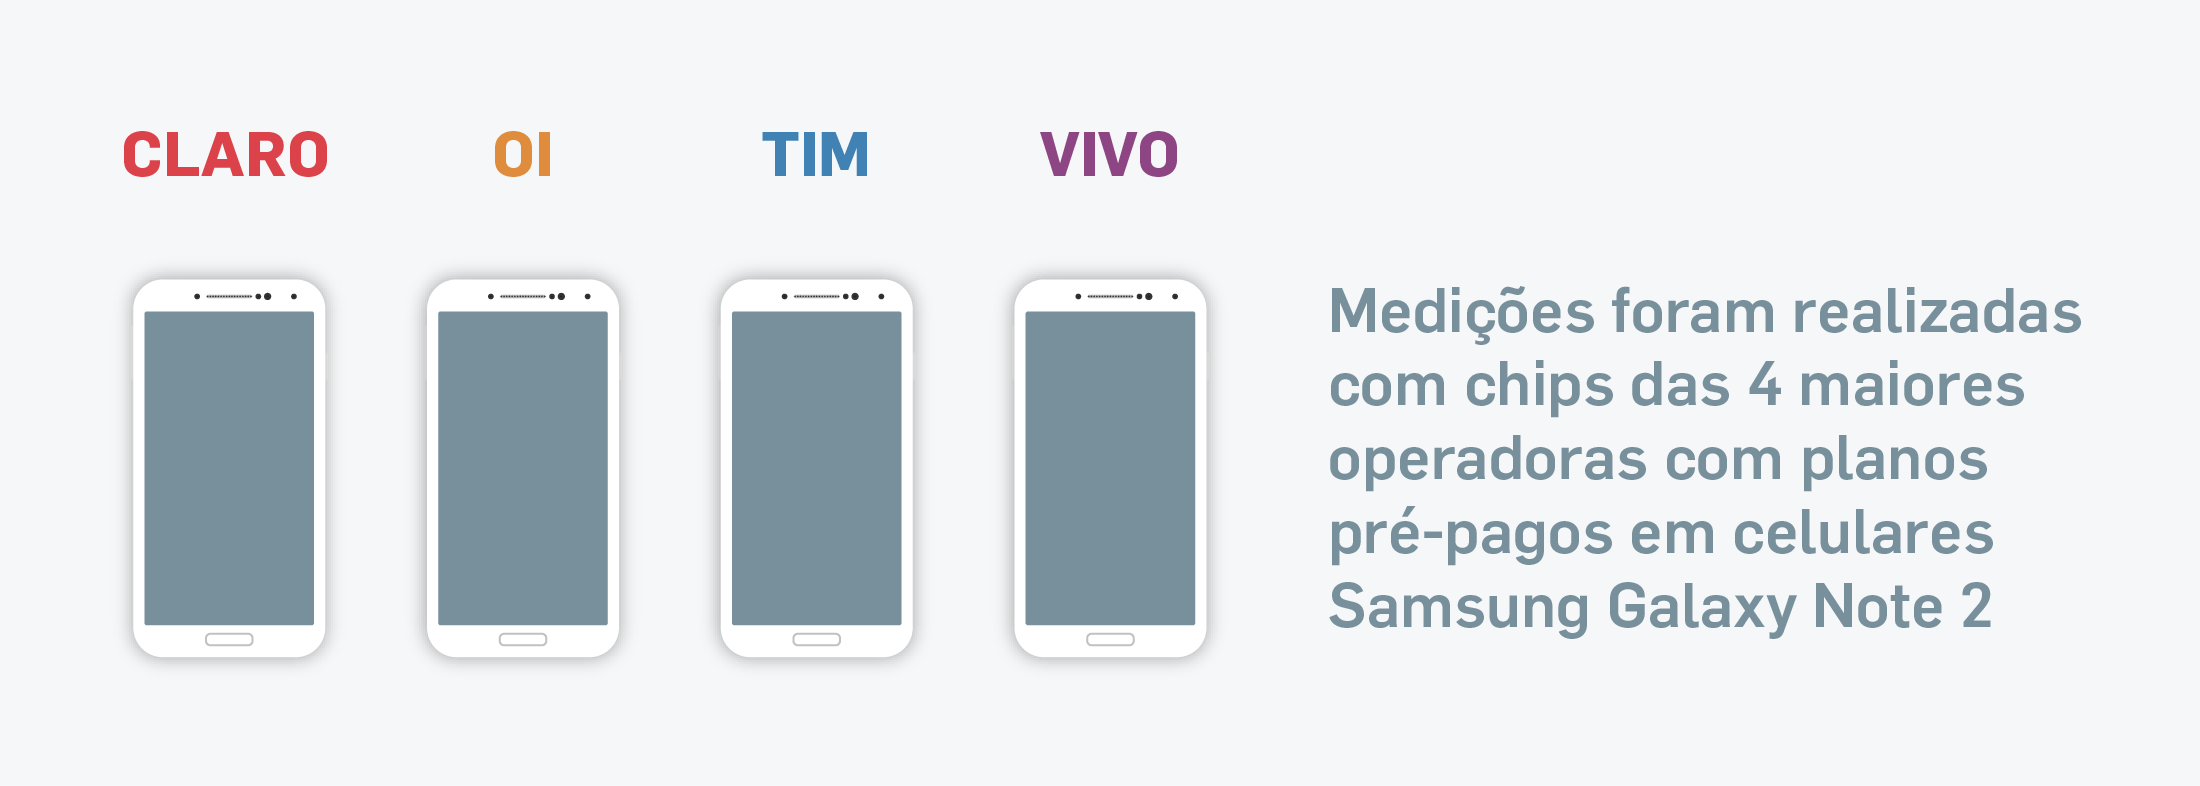 Medições foram realizadas com chips das 4 maiores operadoras com planos pré-pagos em celulares Samsung Galaxy Note 2